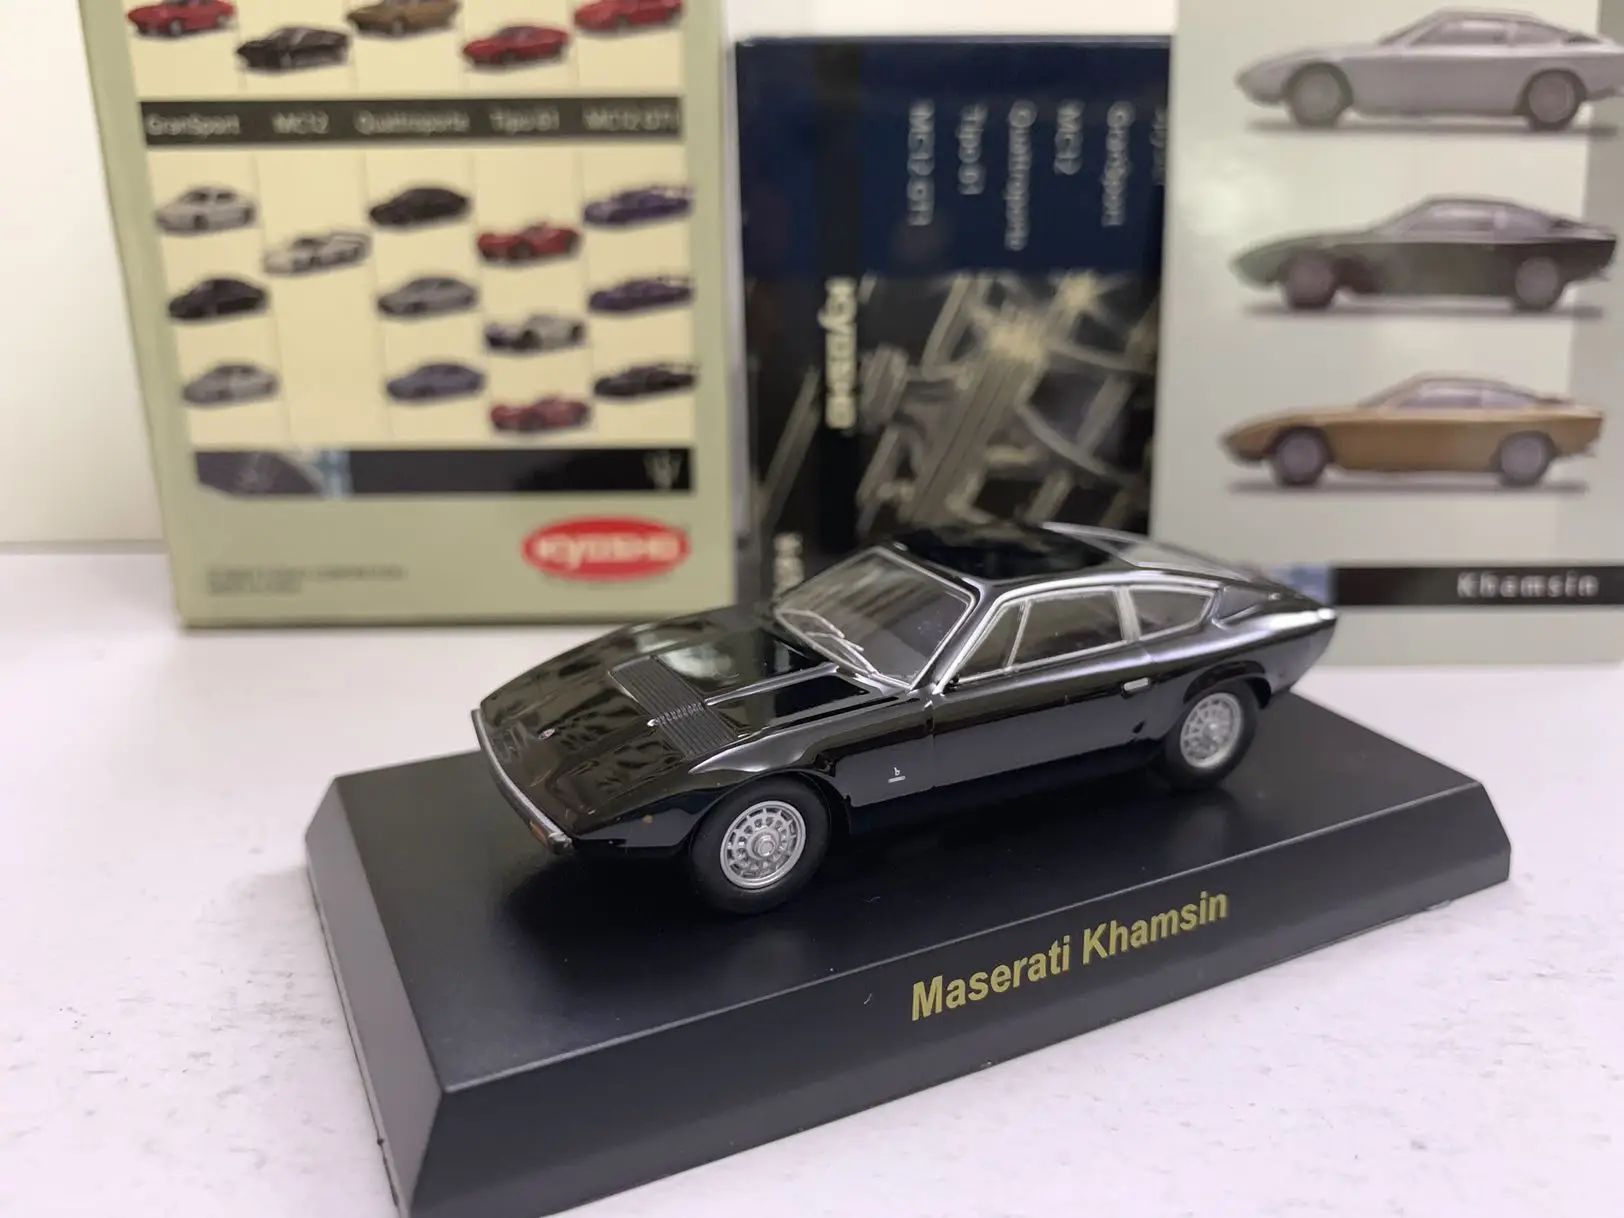 

Коллекция гоночных моделей Игрушек KYOSHO Maserati Khamsin LM F1 из литого сплава, 1/64